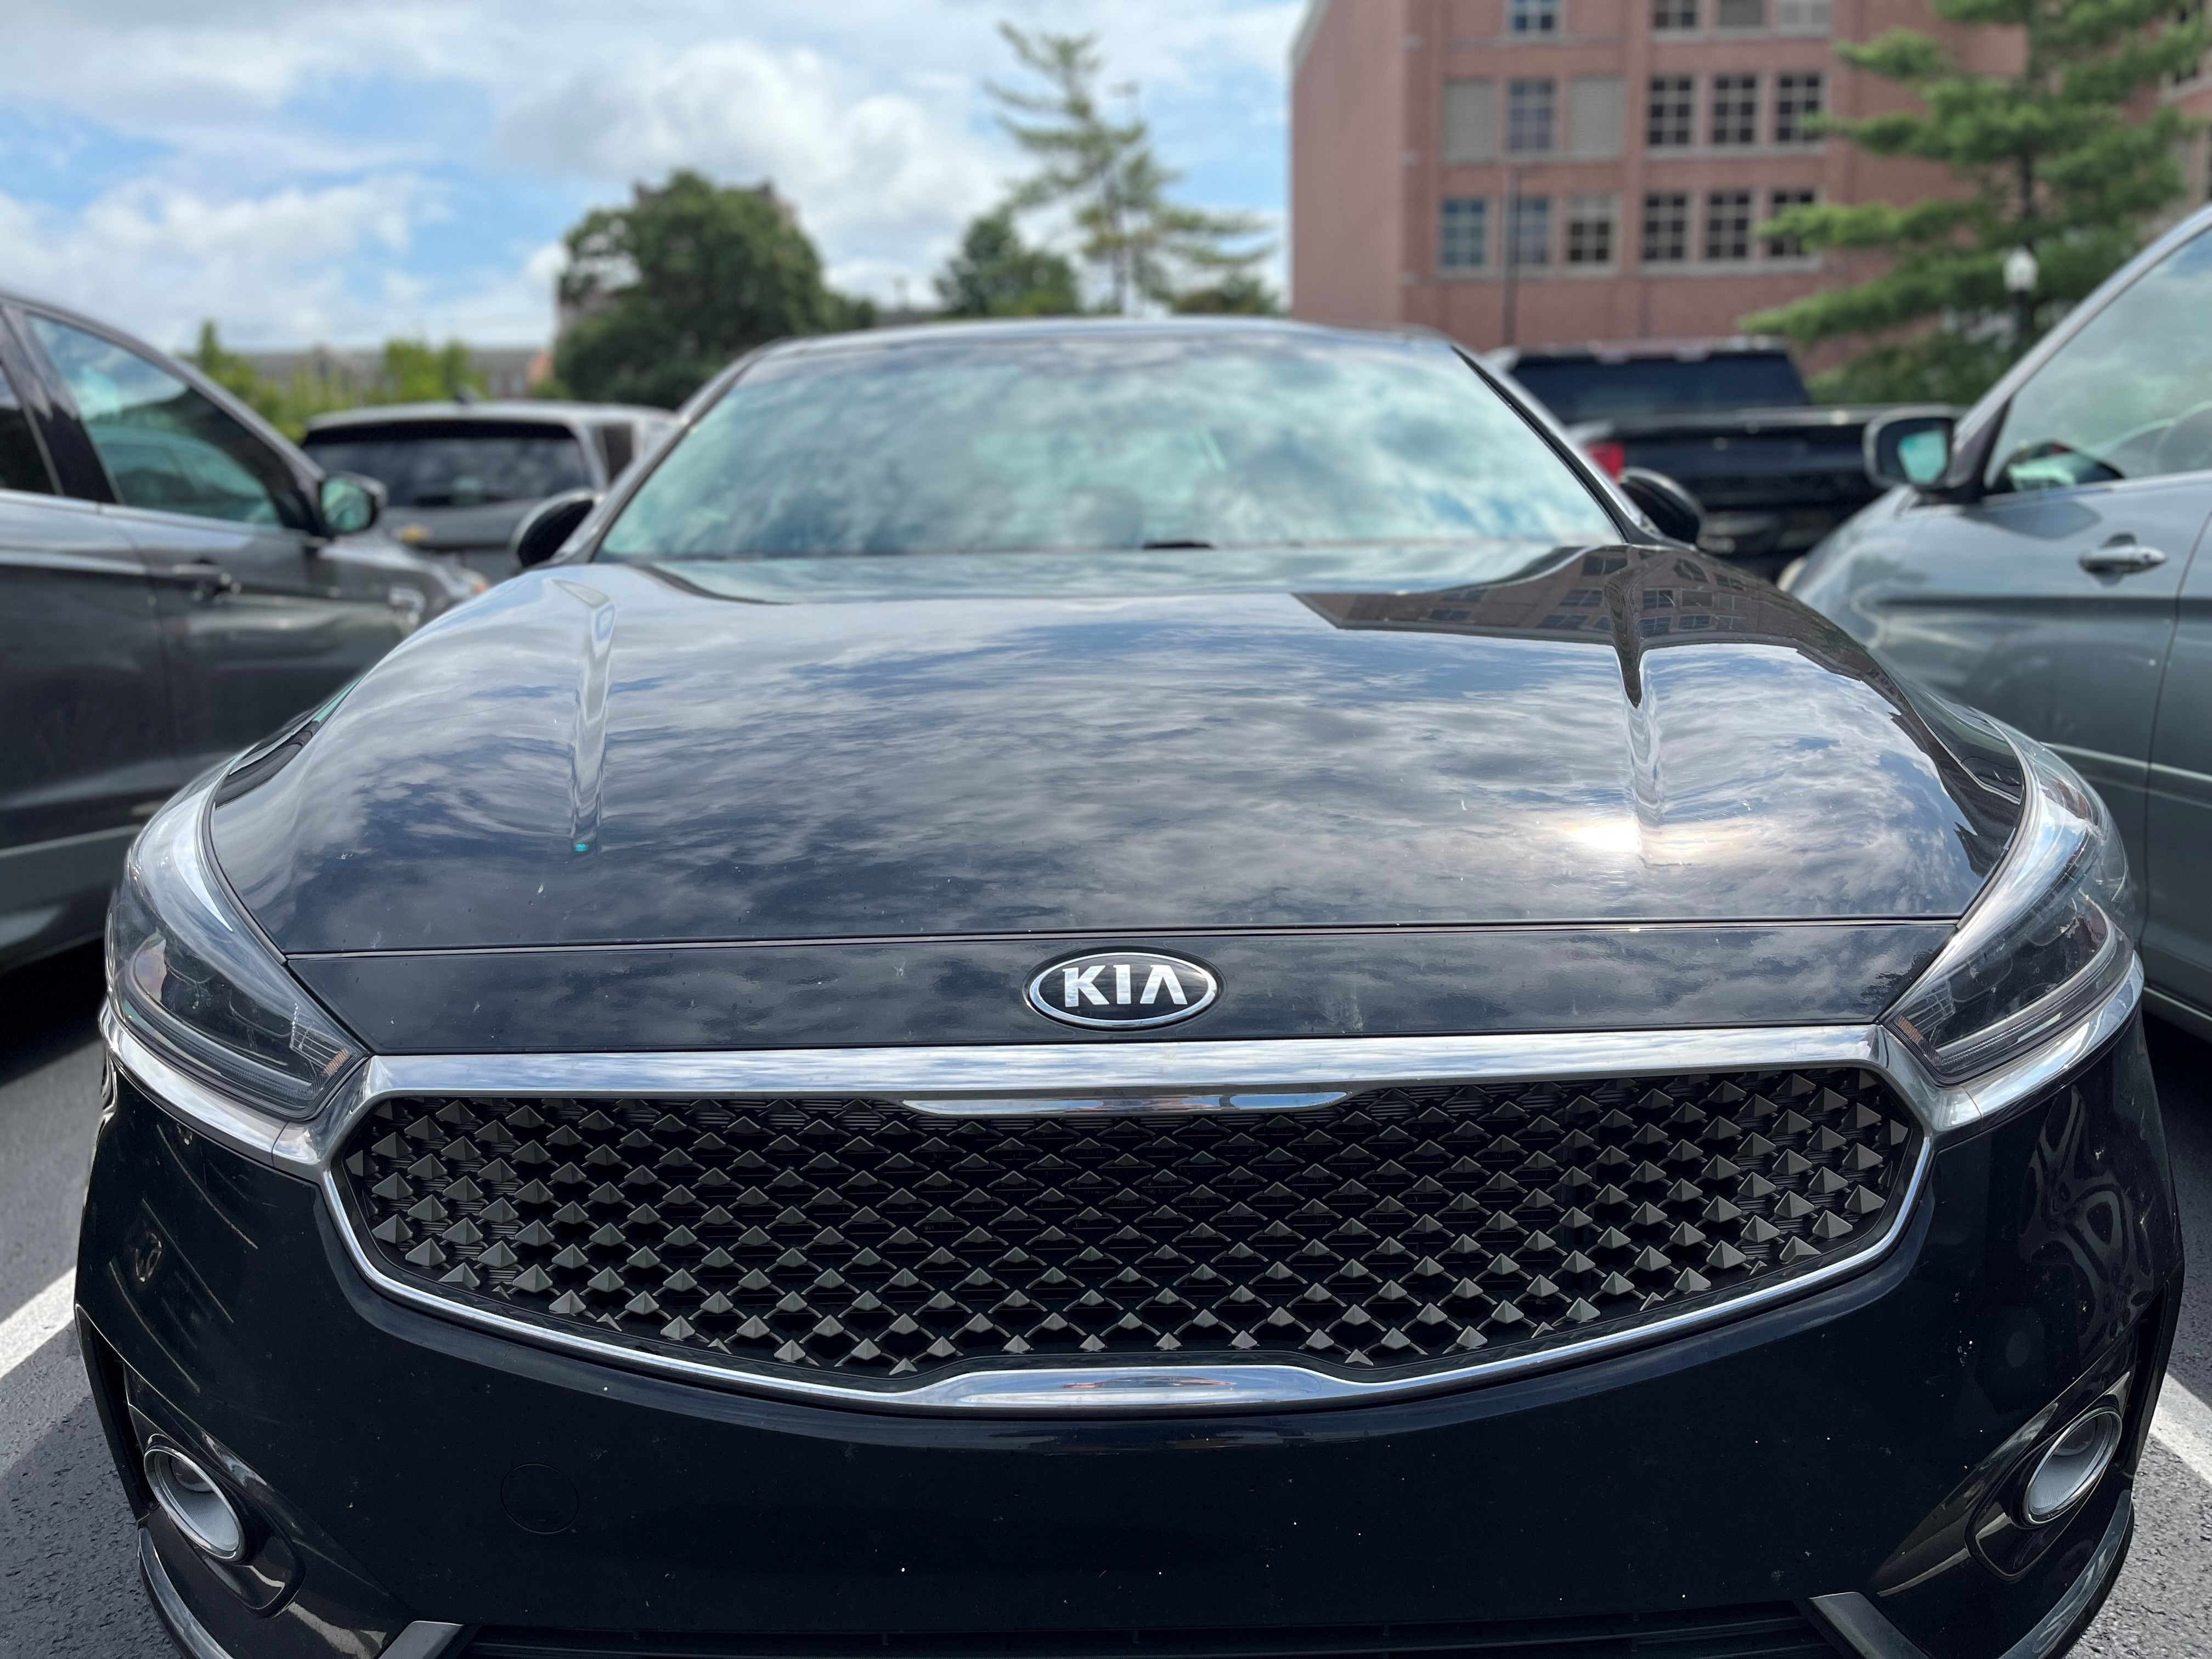 A Kia parked in a parking lot in Dayton. CORNELIUS FROLIK / STAFF